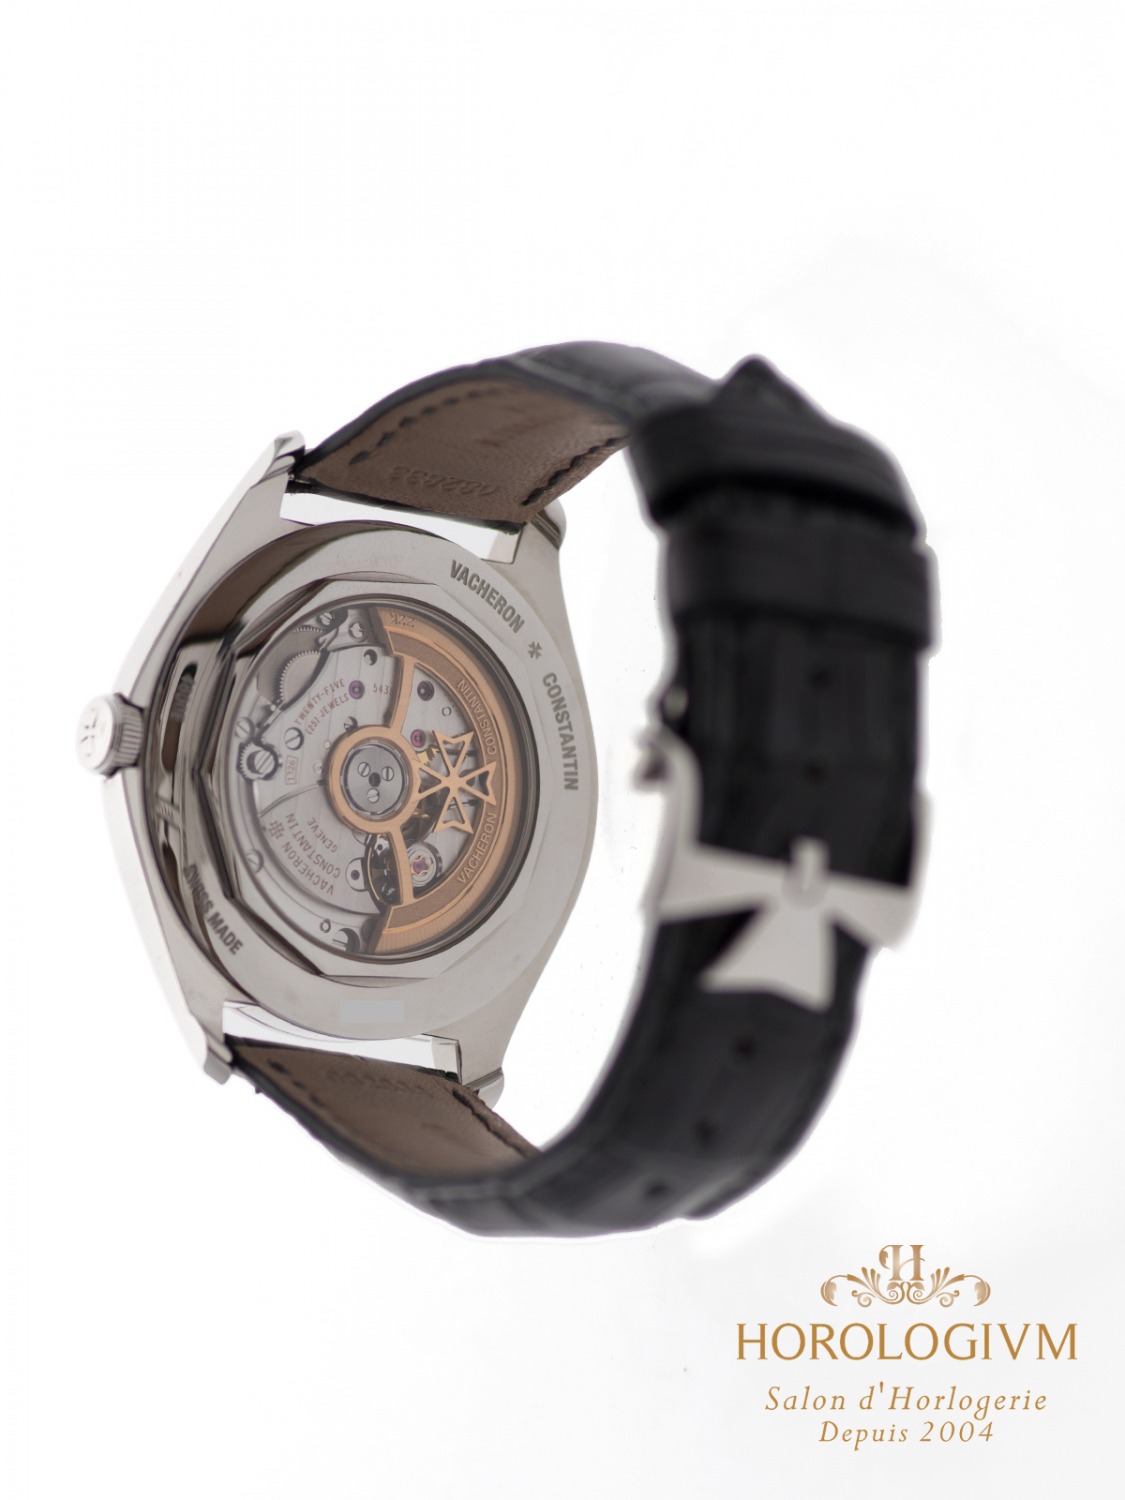 Vacheron Constantin Fiftysix 4600e/000a-b442 watch, silver